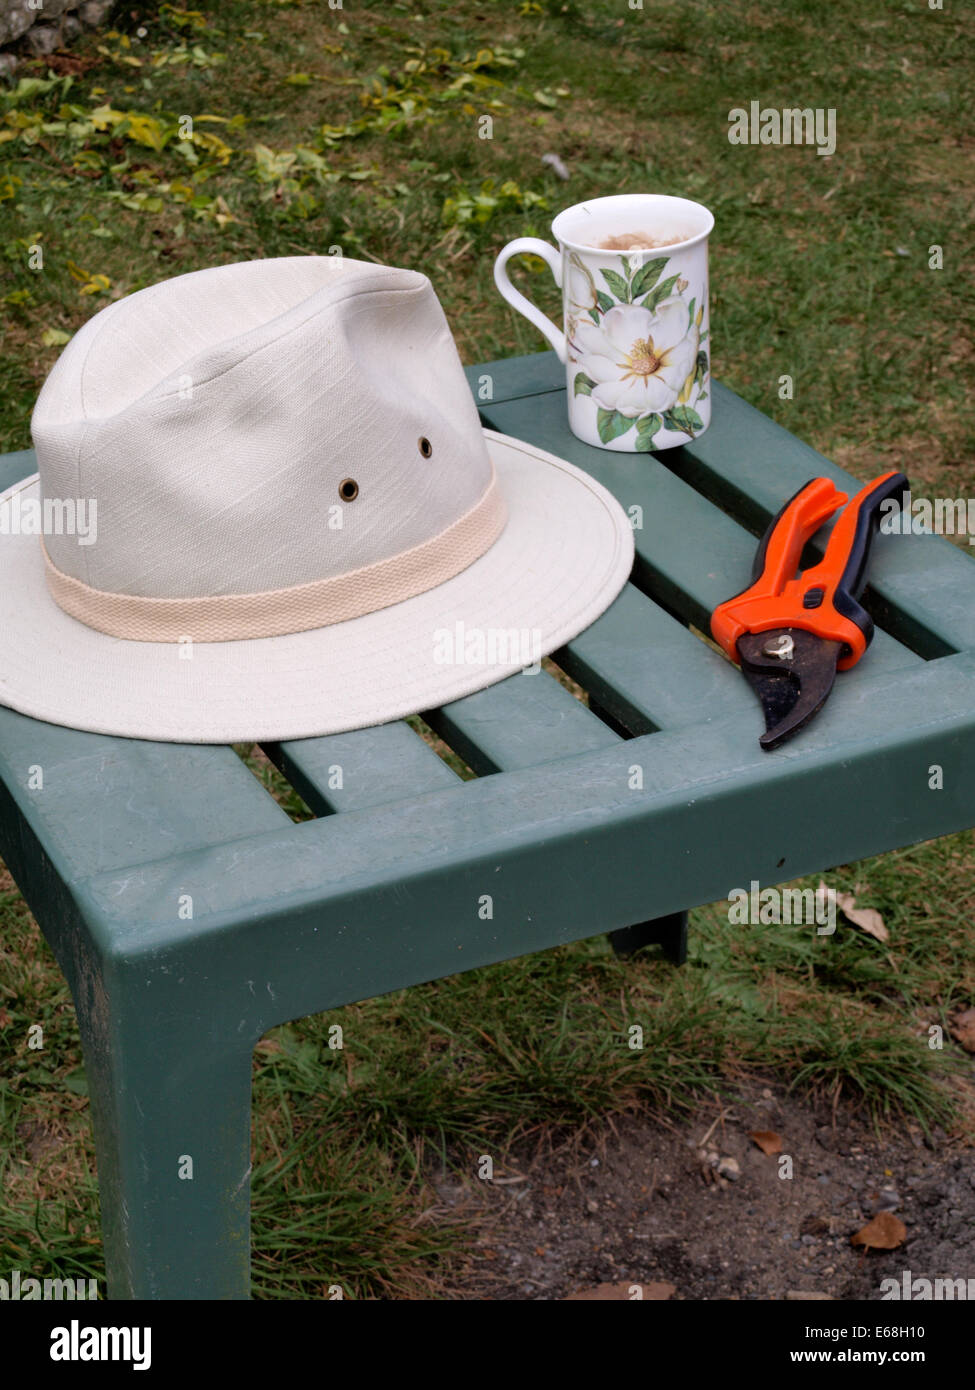 Gärtner-Hut, Gartenschere und Becher Tee, UK Stockfoto